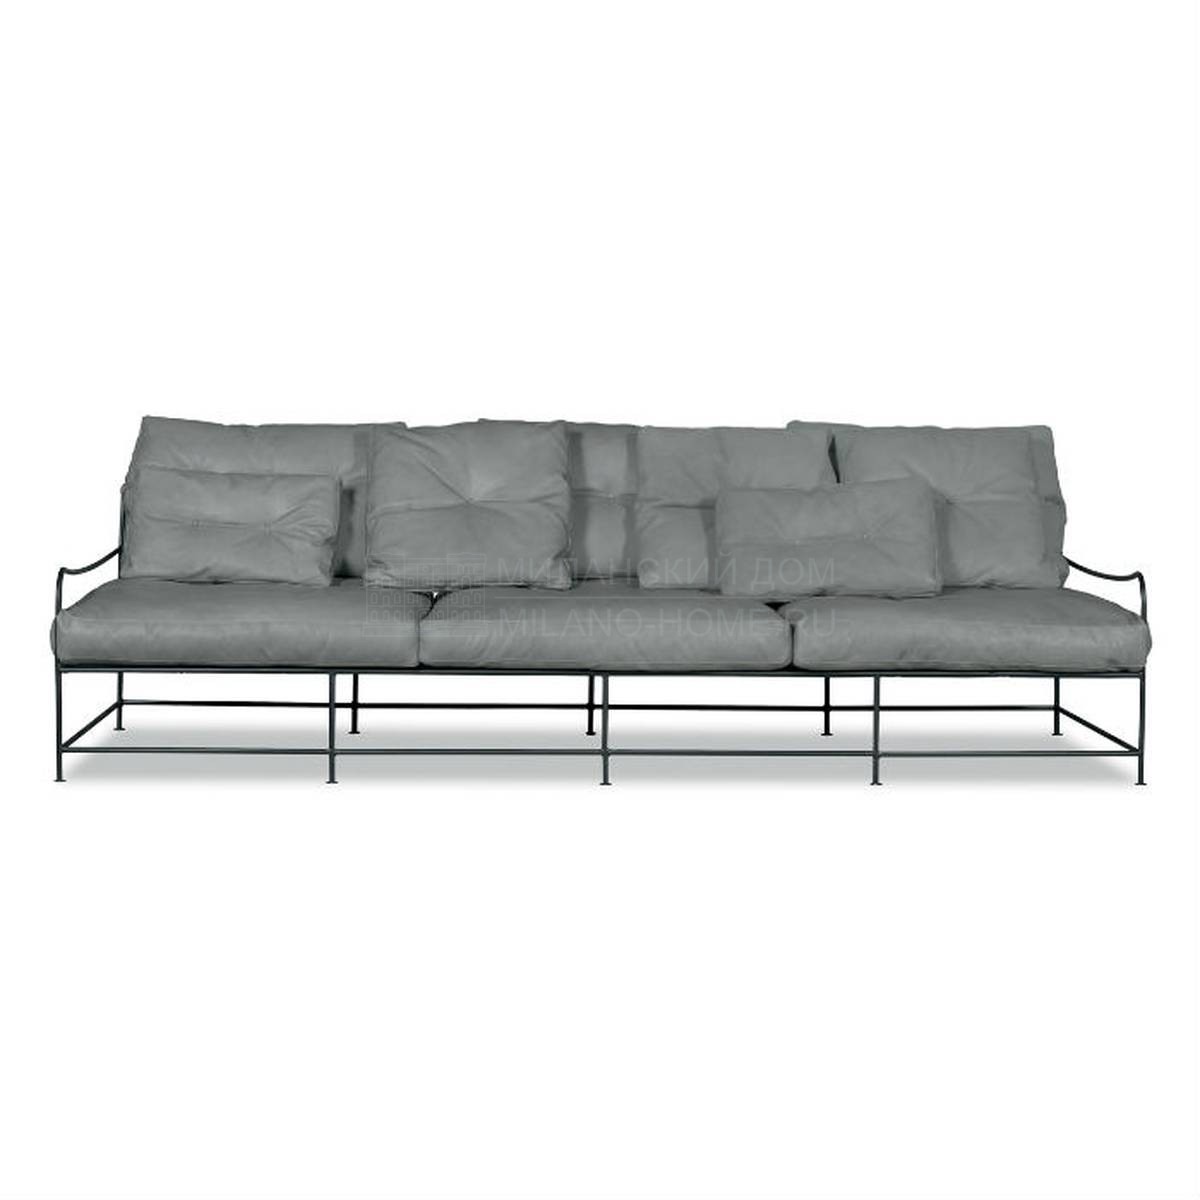 Прямой диван Girgenti sofa из Италии фабрики BAXTER